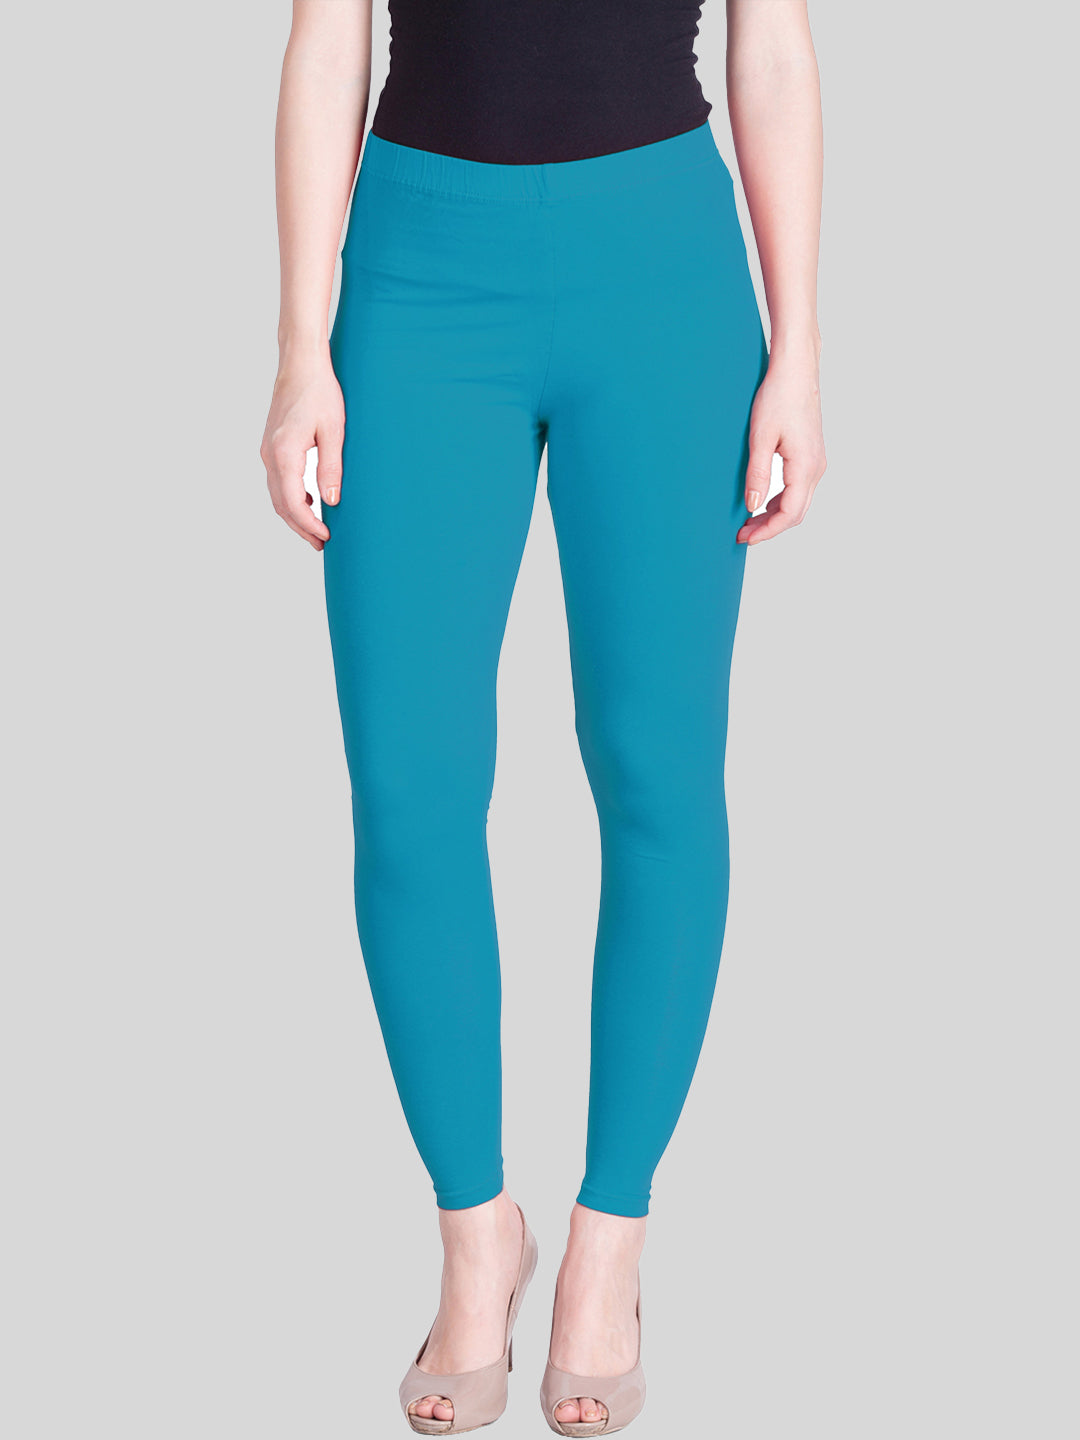 Justice Girls Leggings Turquoise Size 10 Full Length Logo | eBay